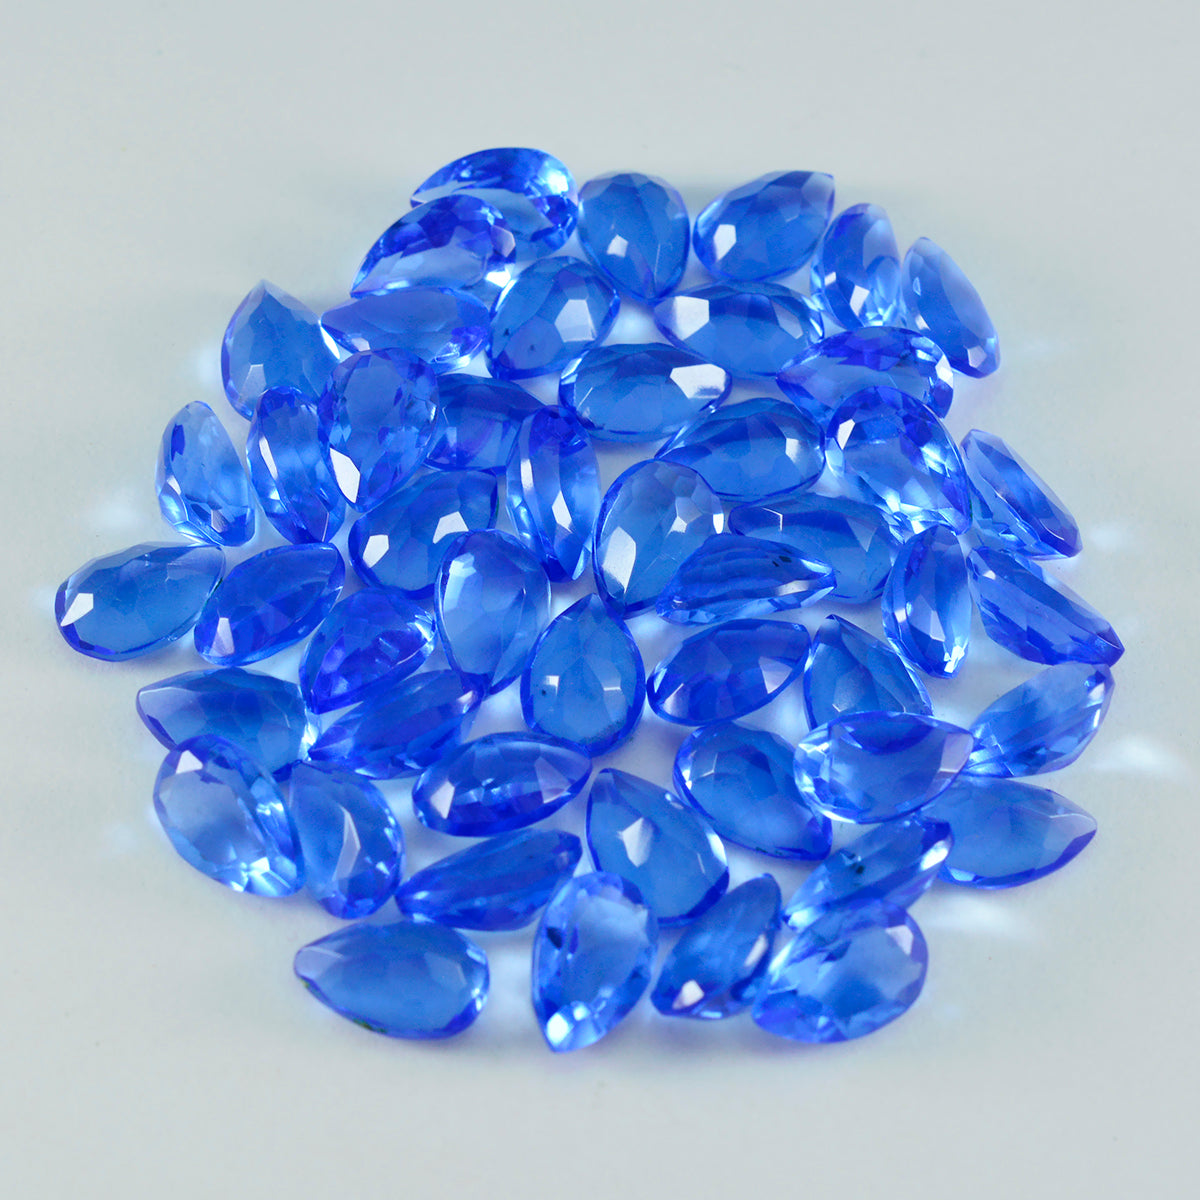 Riyogems 1 Stück blauer Saphir, CZ, facettiert, 4 x 6 mm, Birnenform, gut aussehender Qualitäts-Edelstein